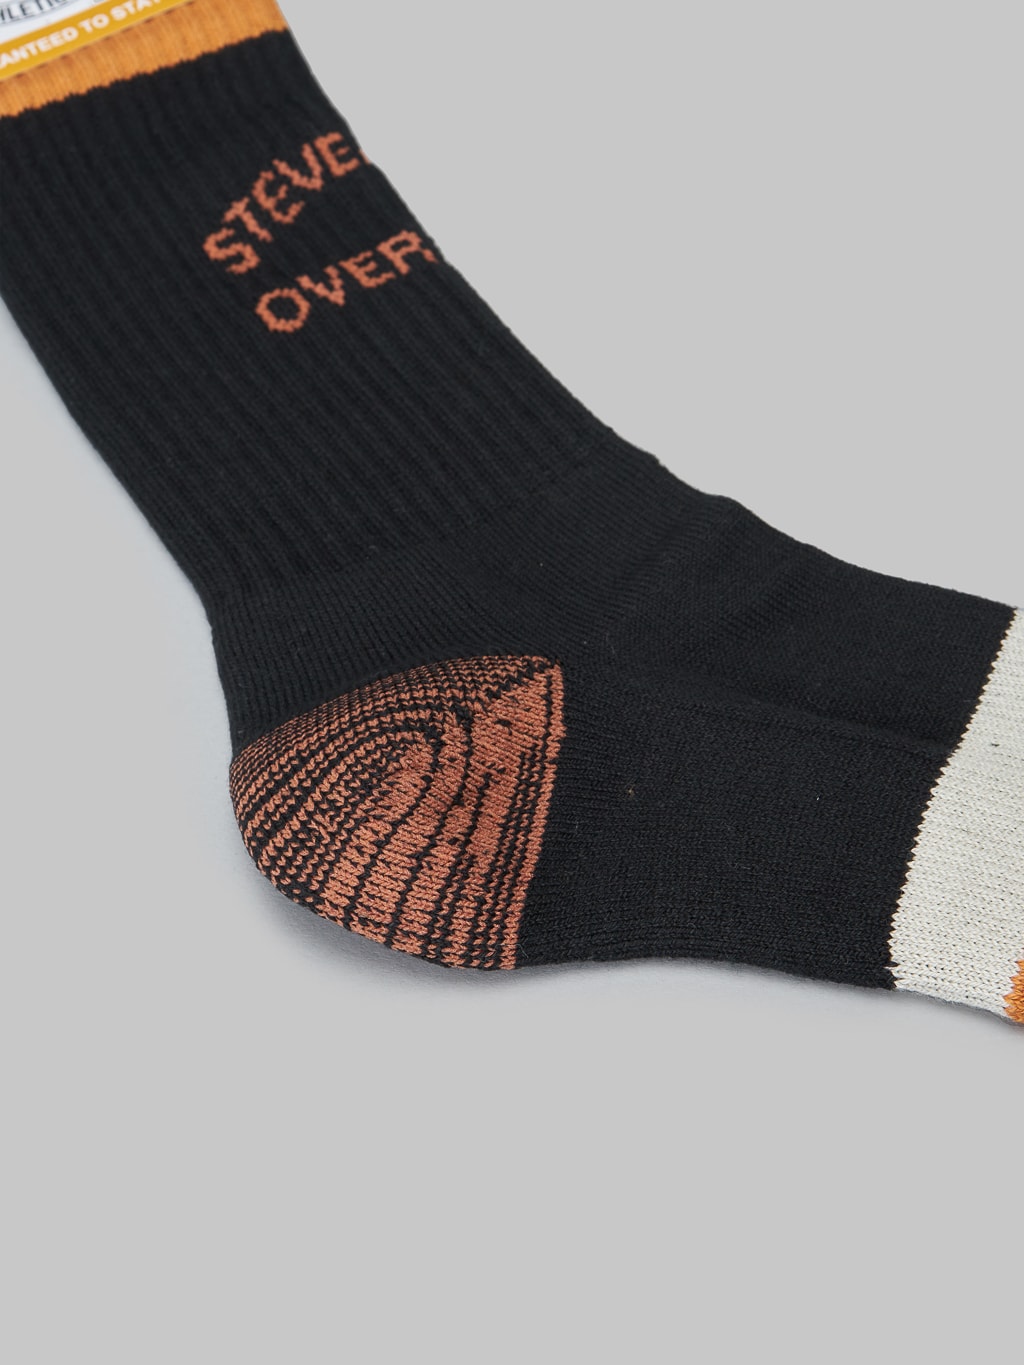 Stevenson Overall Co. Athletic Socks Black